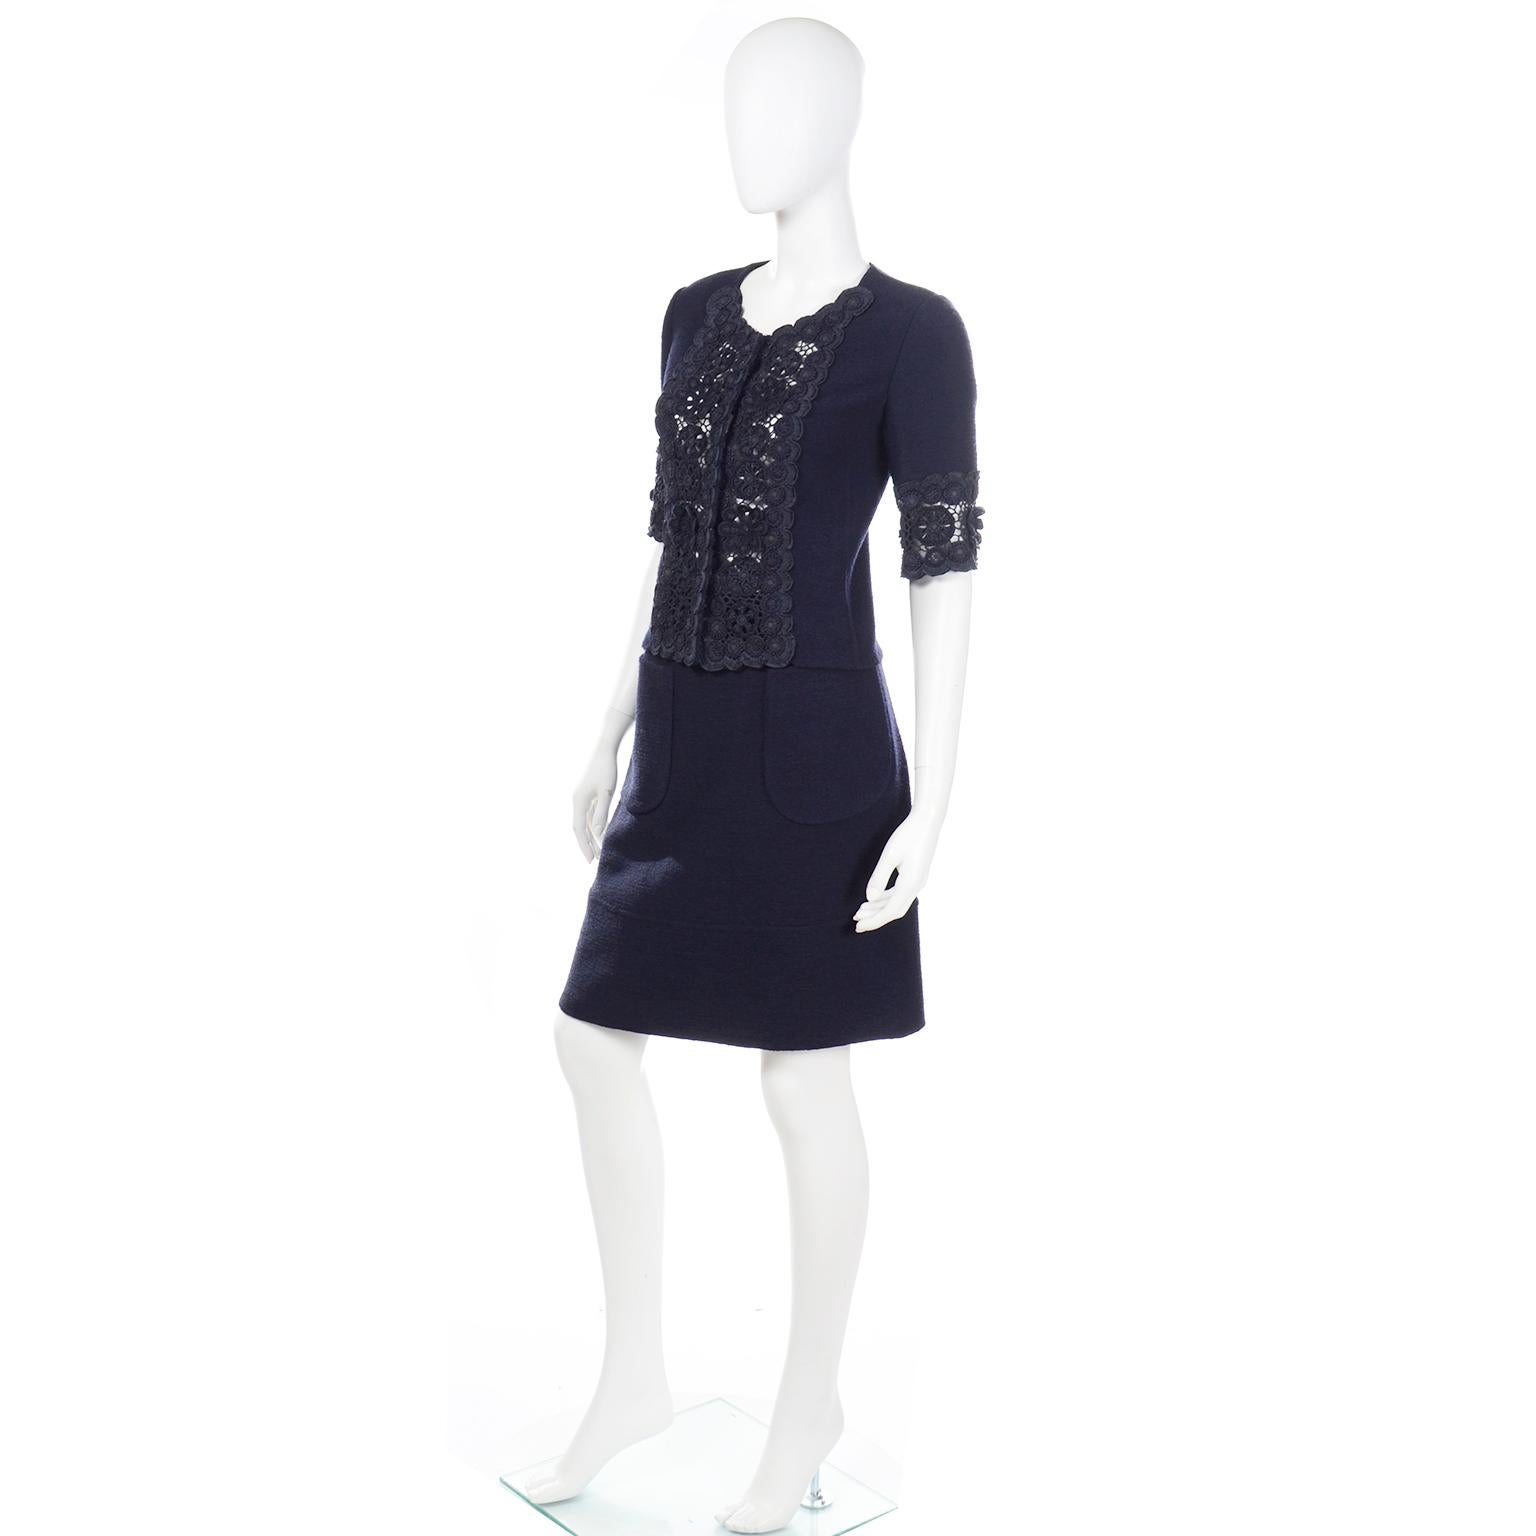 Oscar de la Renta S 2007 Runway Beaded Black Skirt & Jacket Suit w Crochet Lace For Sale 2